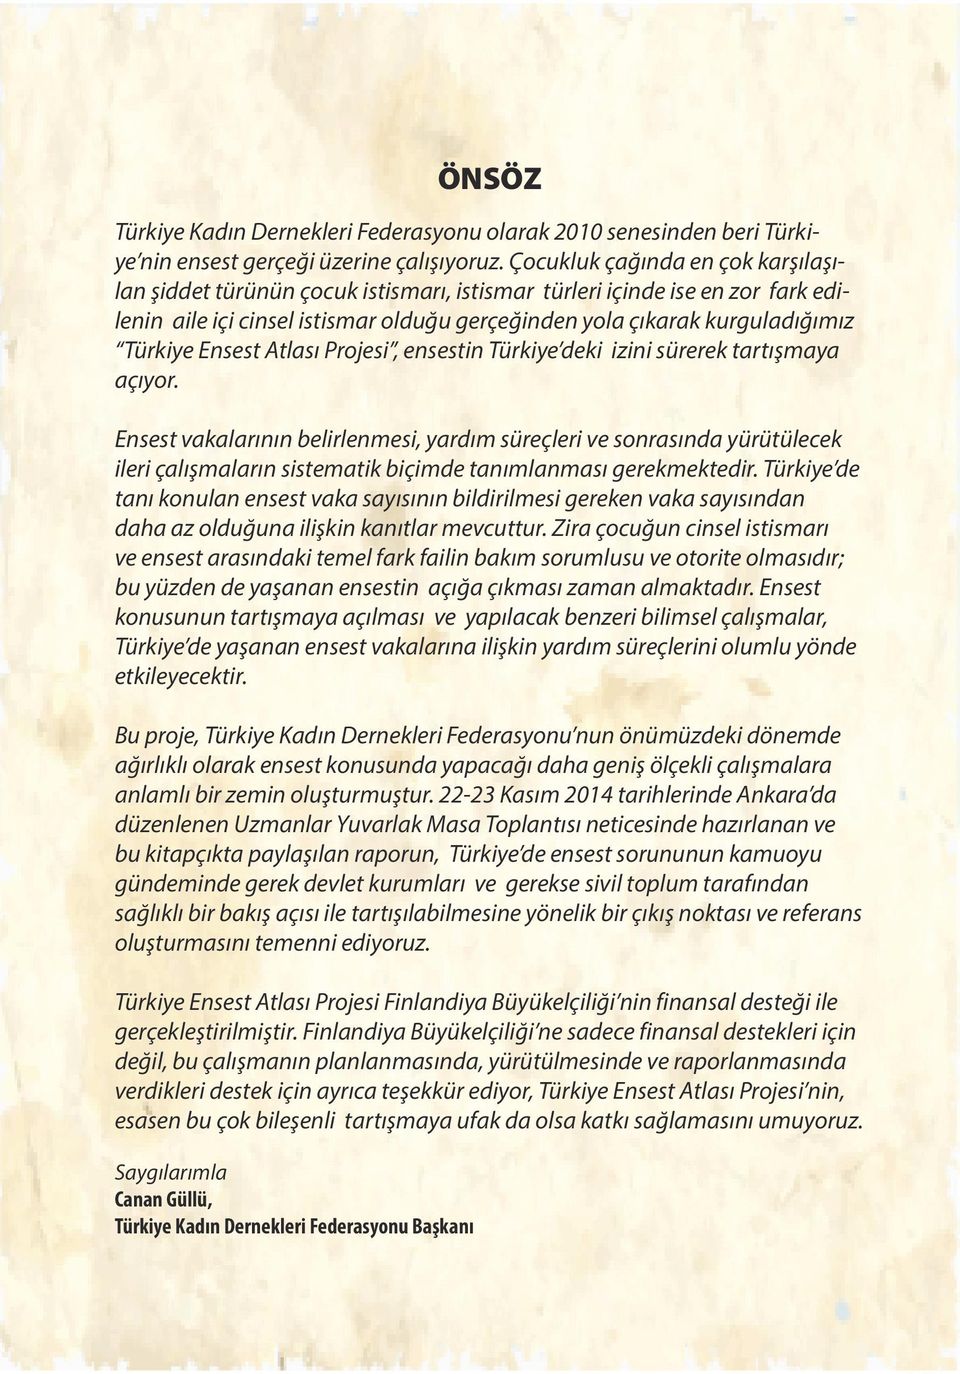 Ensest Atlası Projesi, ensestin Türkiye deki izini sürerek tartışmaya açıyor.